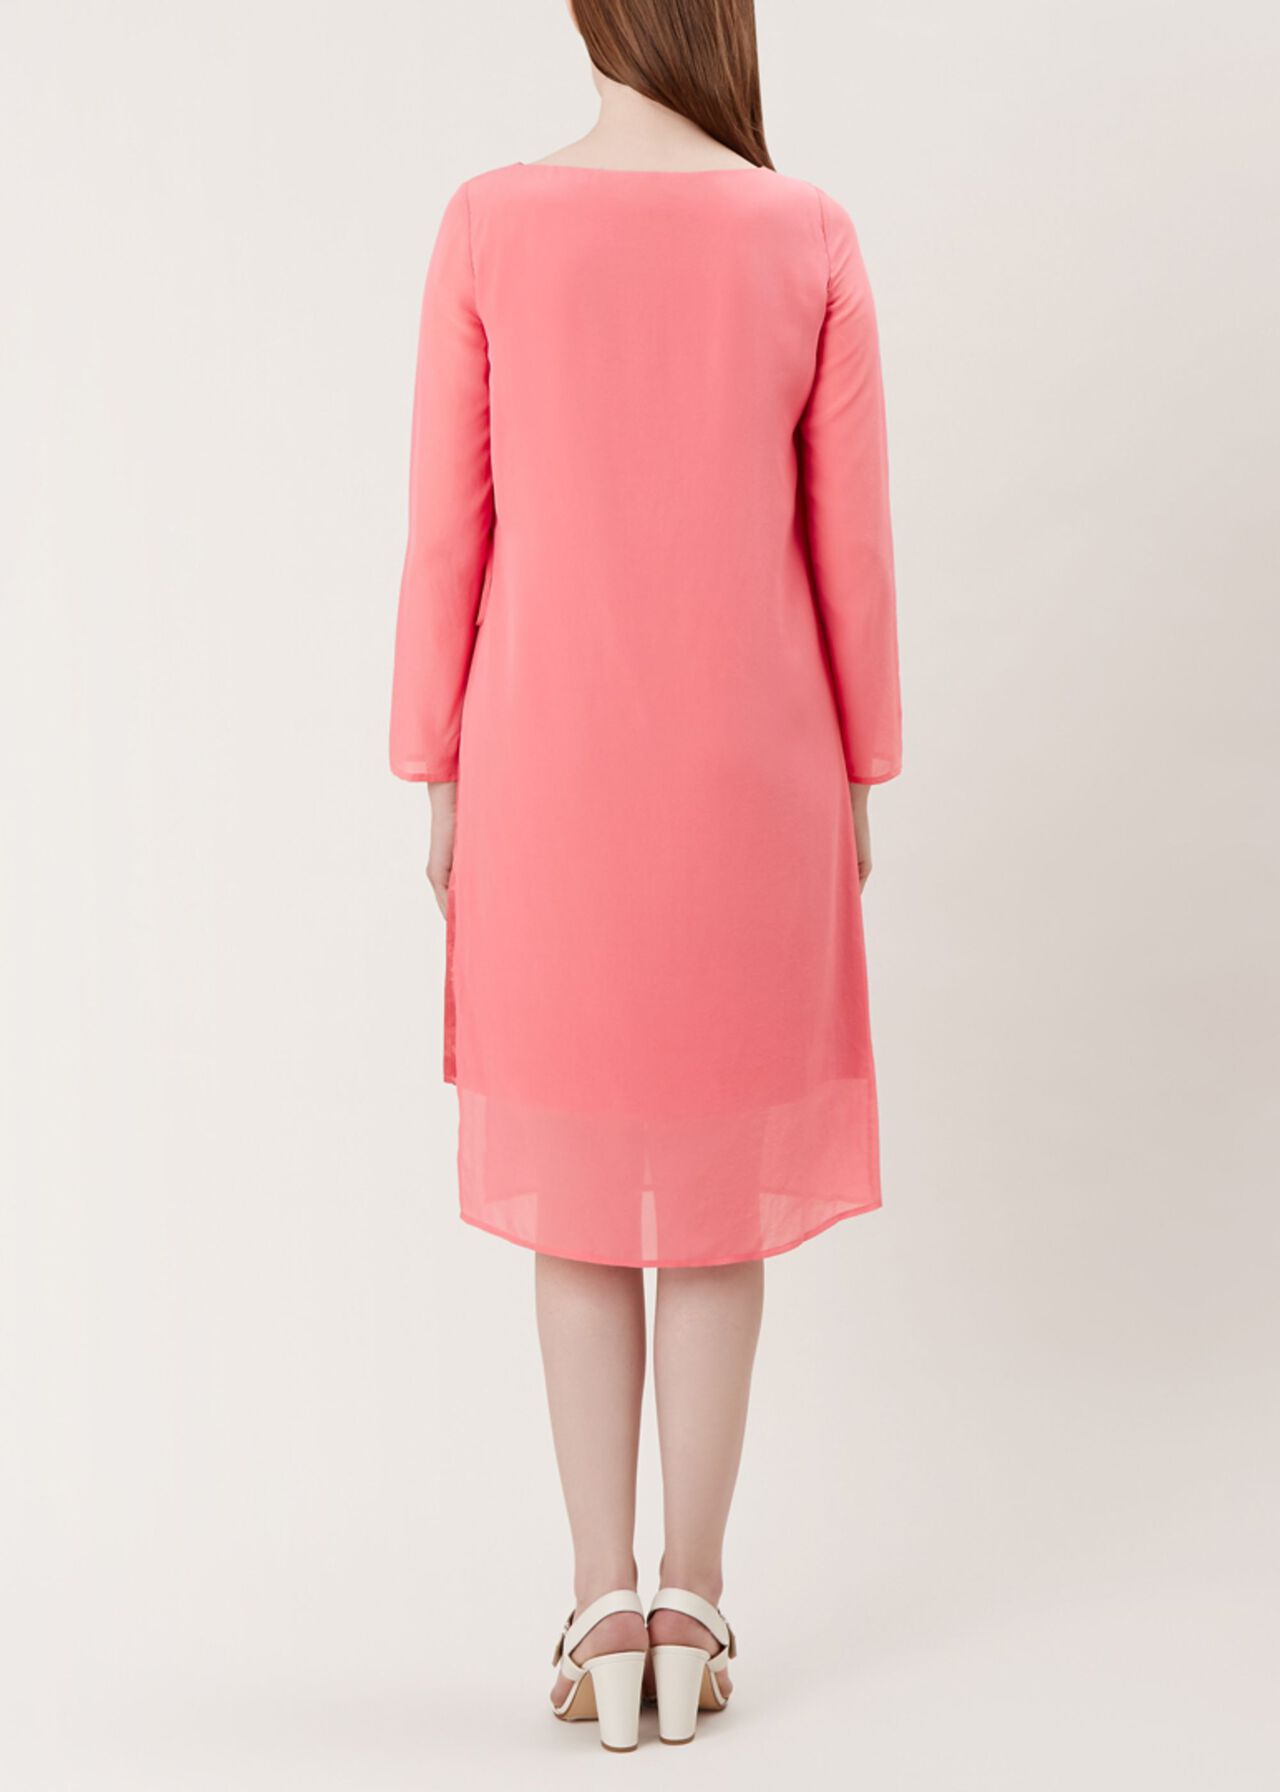 Edie Silk Dress, Pink, hi-res